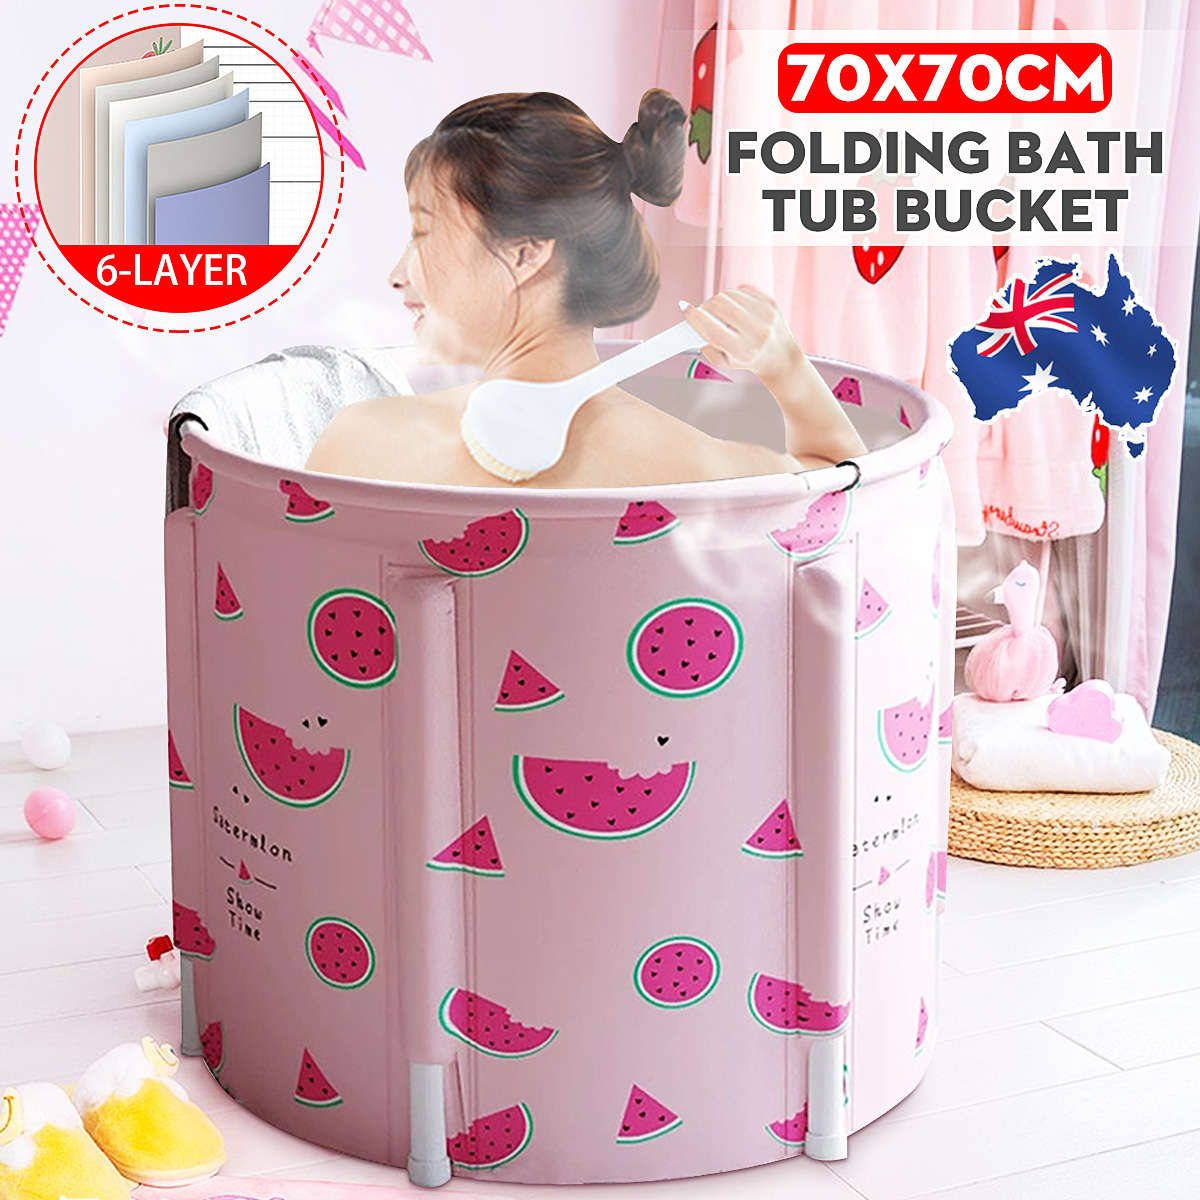 70x70CM Portable PVC Folding Bathtub Water Spa Tub Bath Bucket Outdoor Bath Tub 93